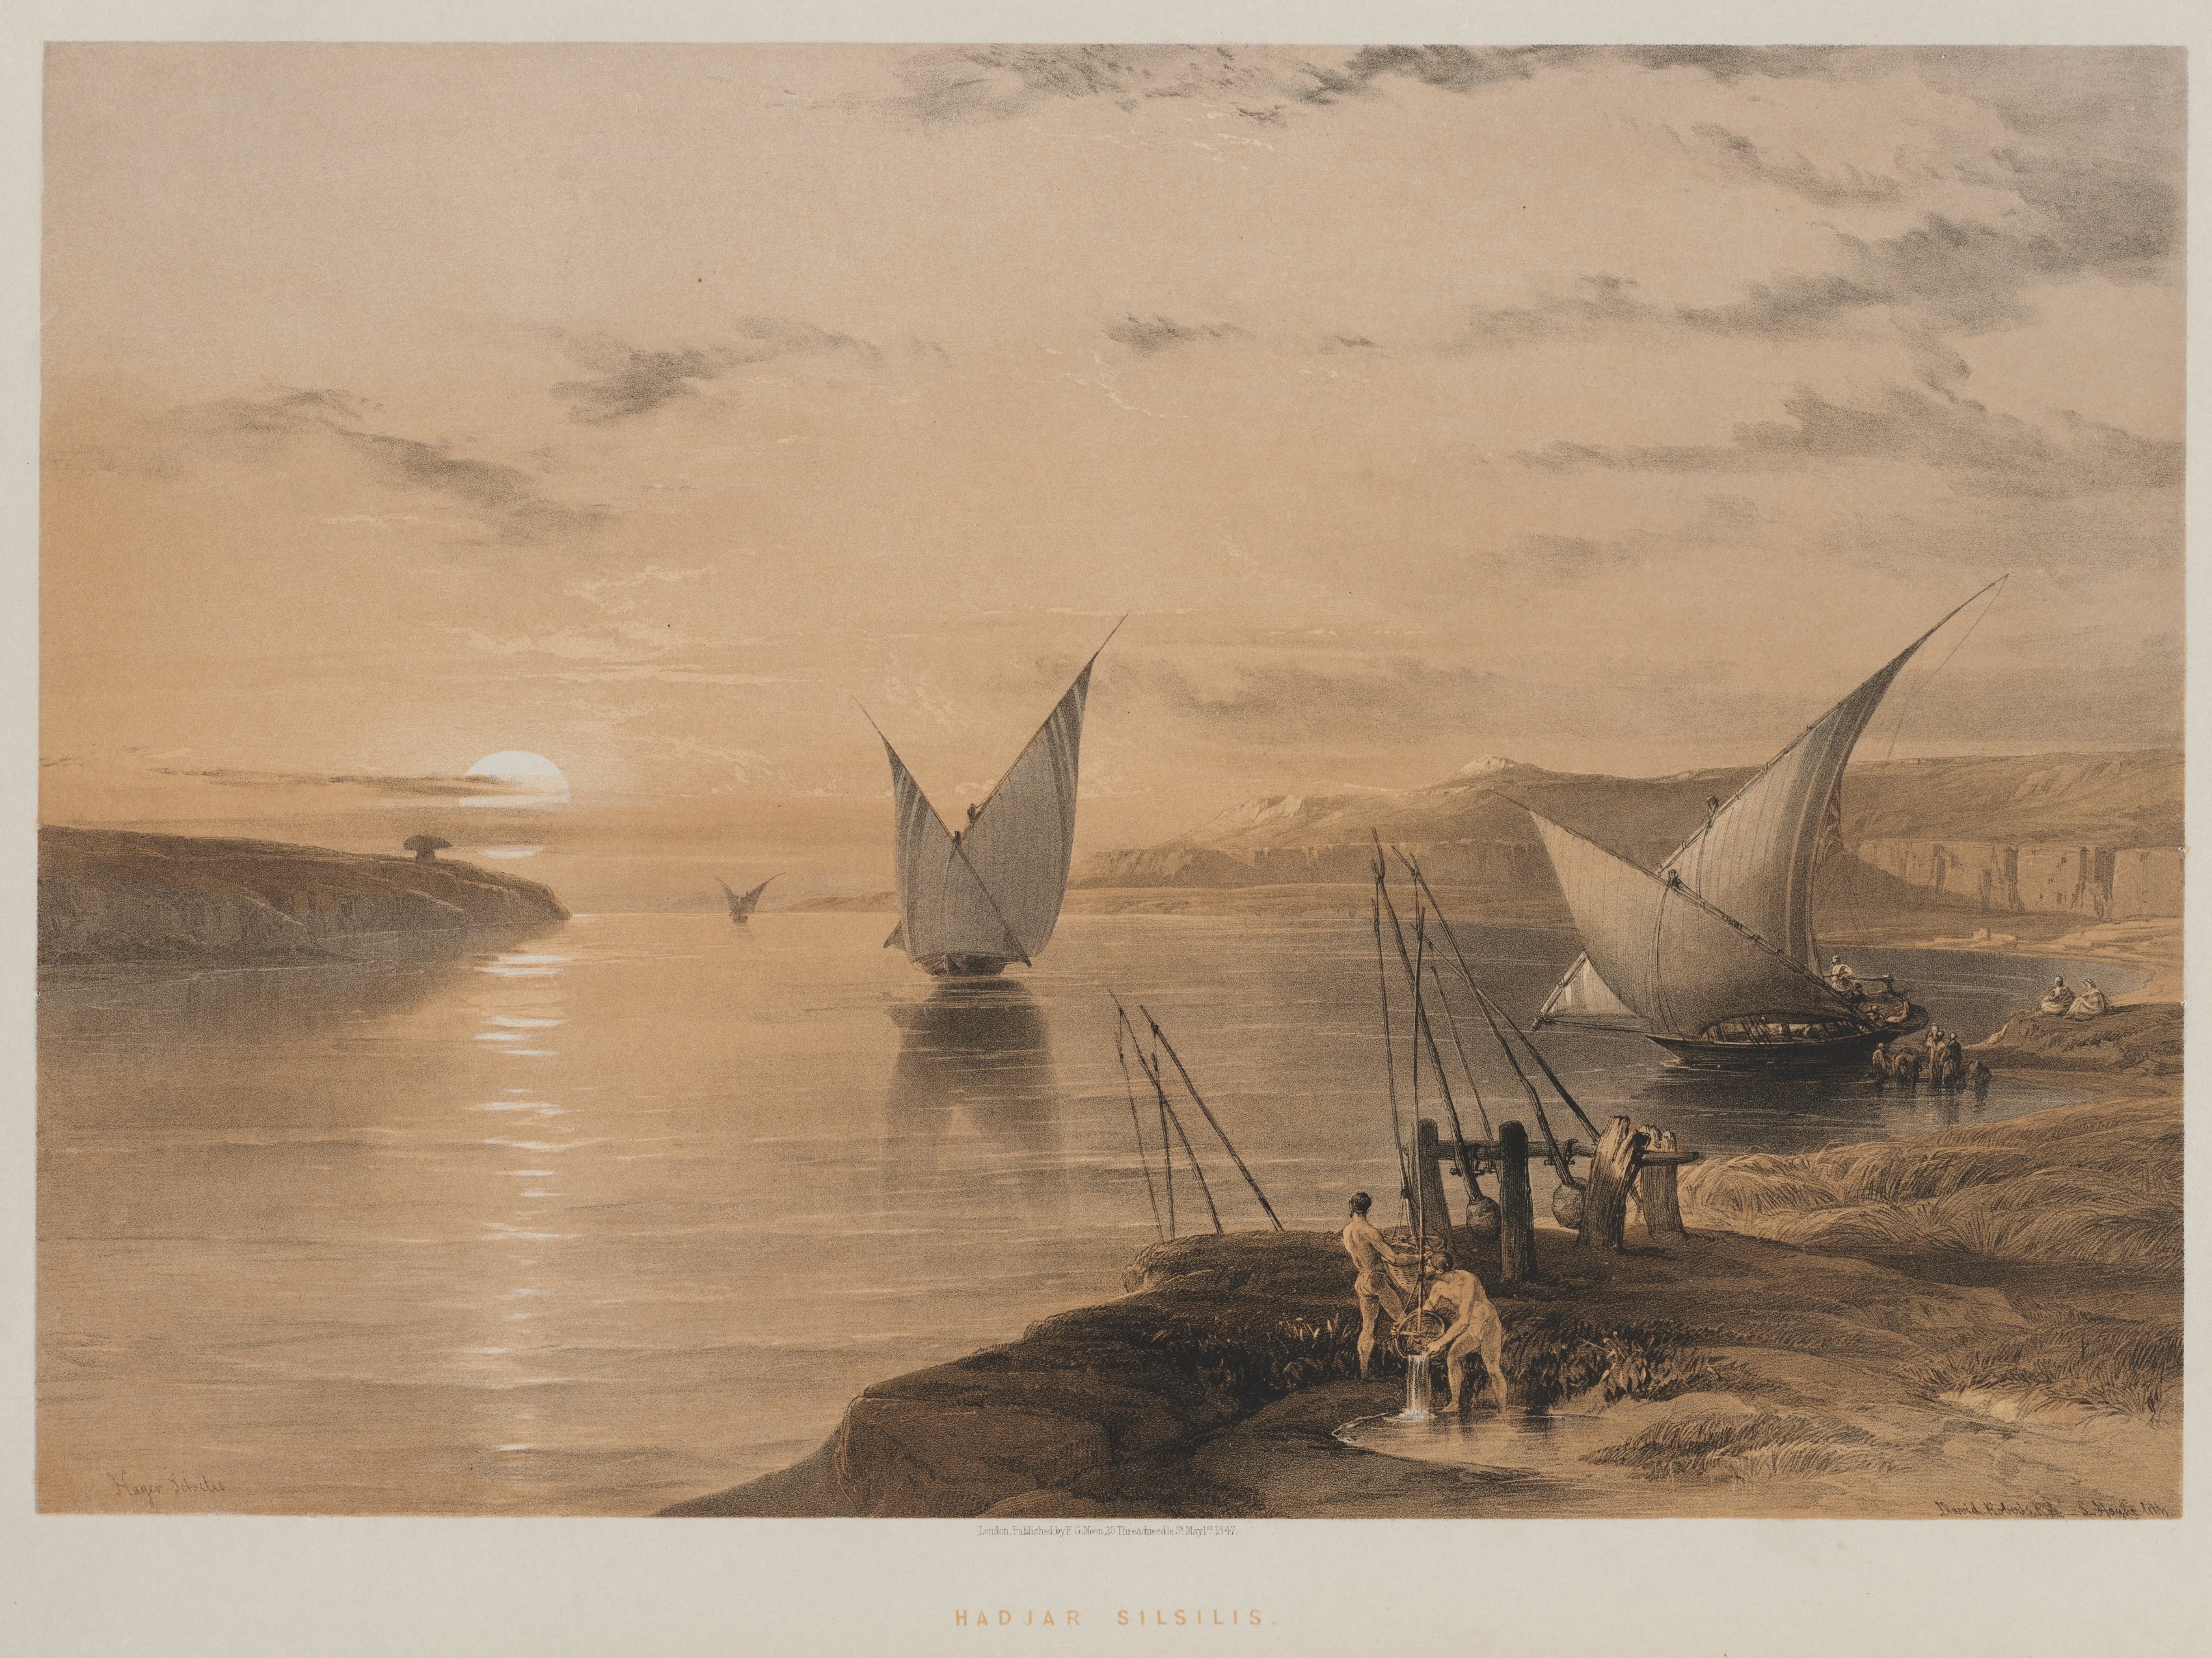 Egypt and Nubia, Volume II: Hagar Setsilis